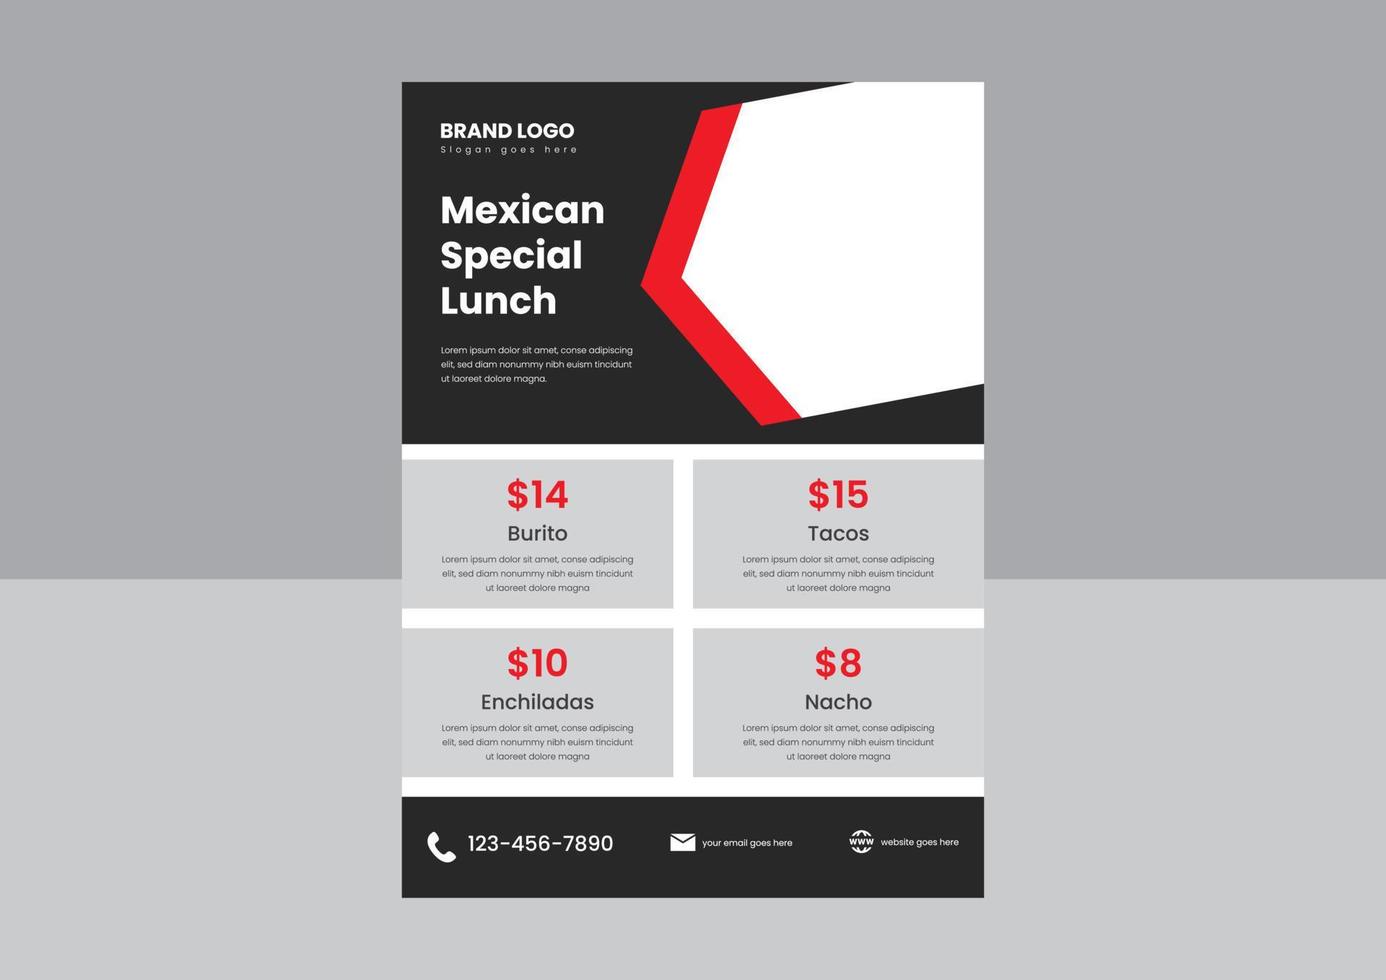 conception d'affiche de flyer de menu de restaurant mexicain. modèle de conception de flyer de restaurant mexicain de nourriture spéciale tacos vecteur